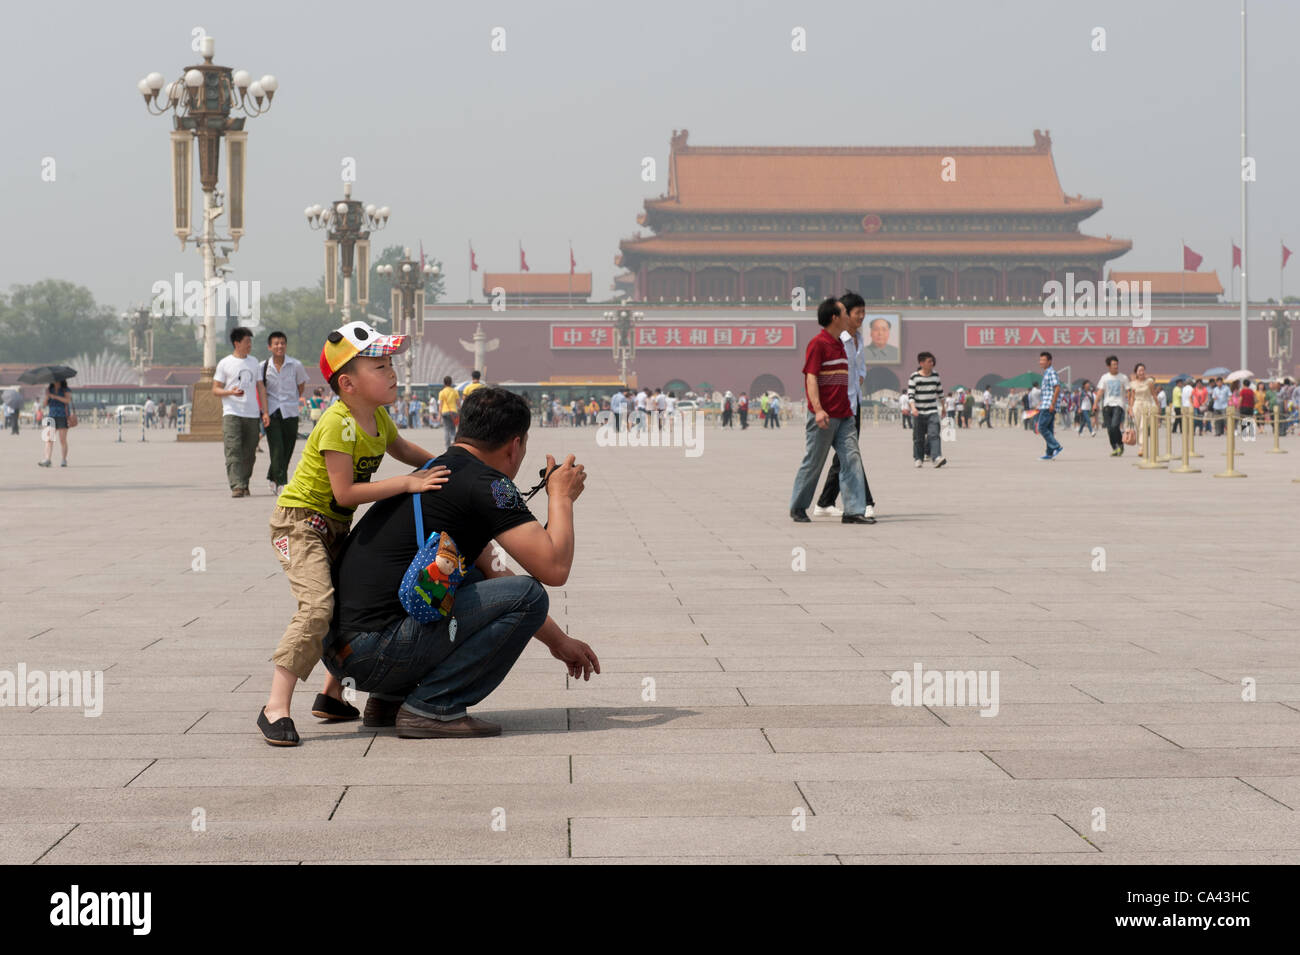 Père et fils se rendre sur la Place Tiananmen, à Beijing, Chine le lundi 4 juin 2012. 4 juin 2012 marque le 23e anniversaire de la répression militaire des manifestations des étudiants de la place Tiananmen en 1989. Banque D'Images